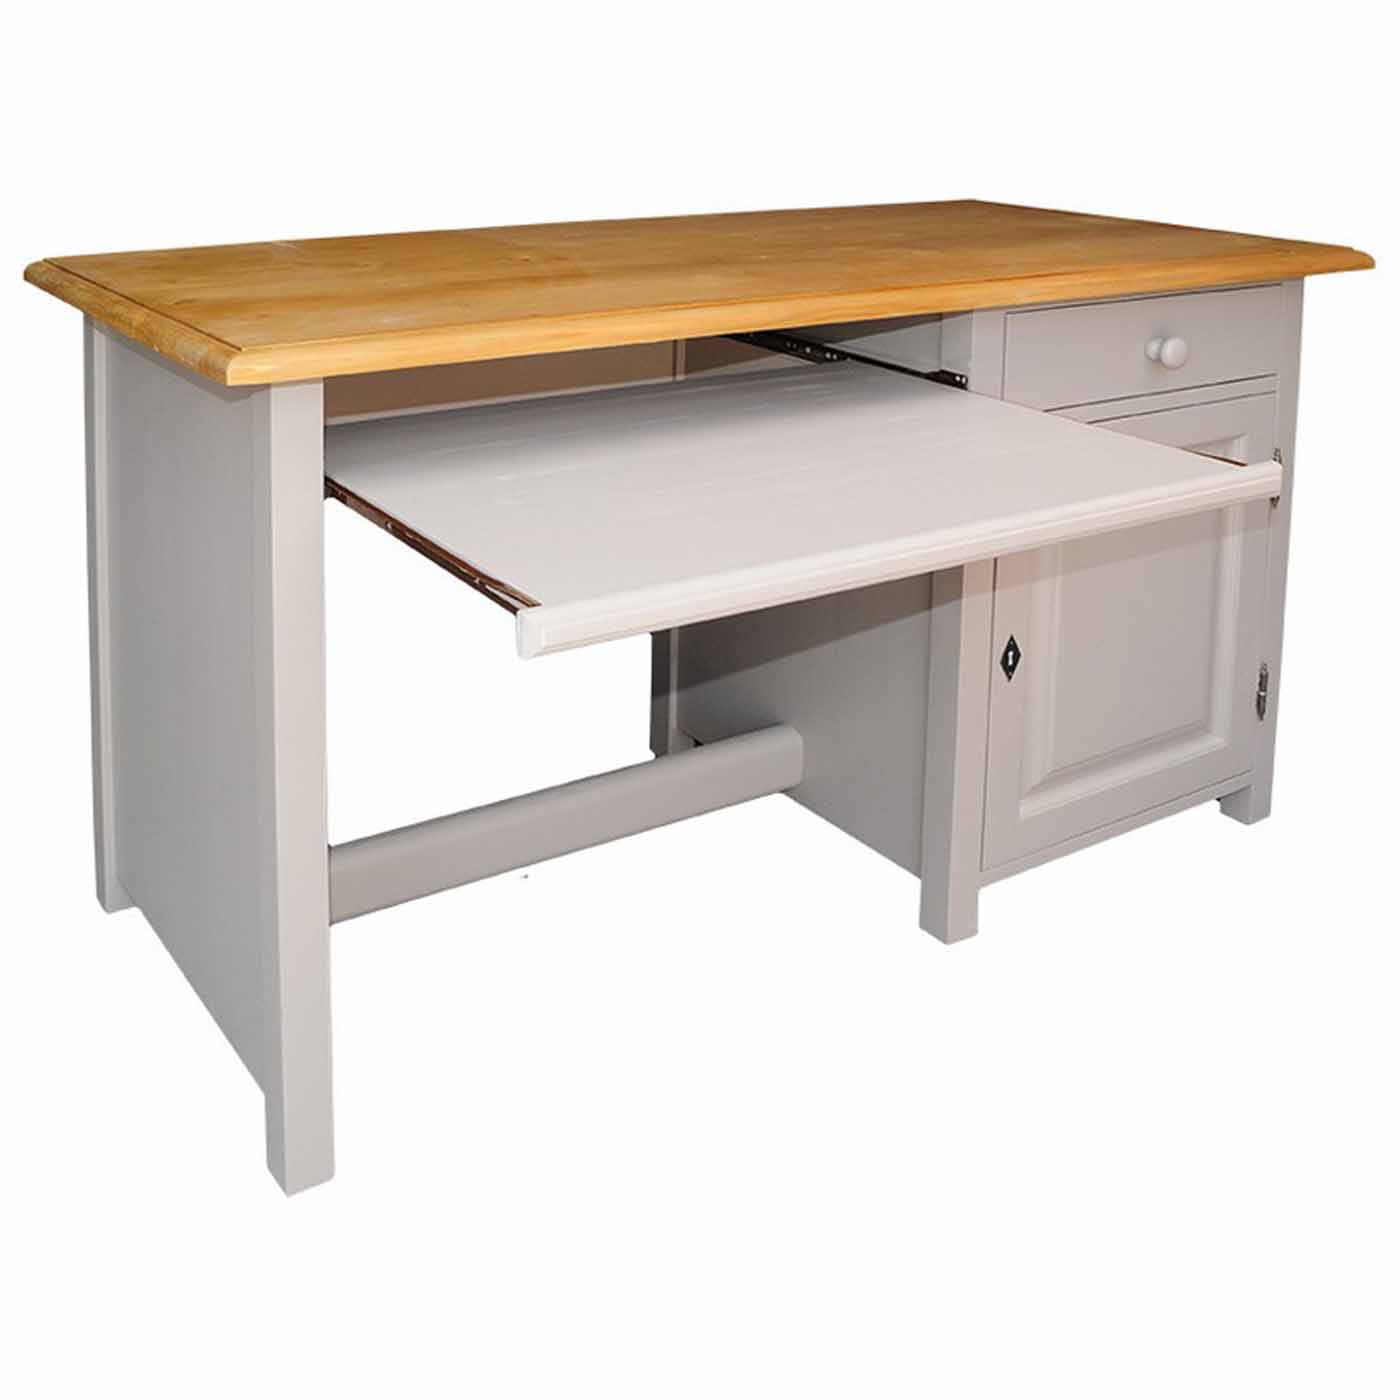 Schreibtisch im Landhausstil aus massivem Kiefernholz gefertigt